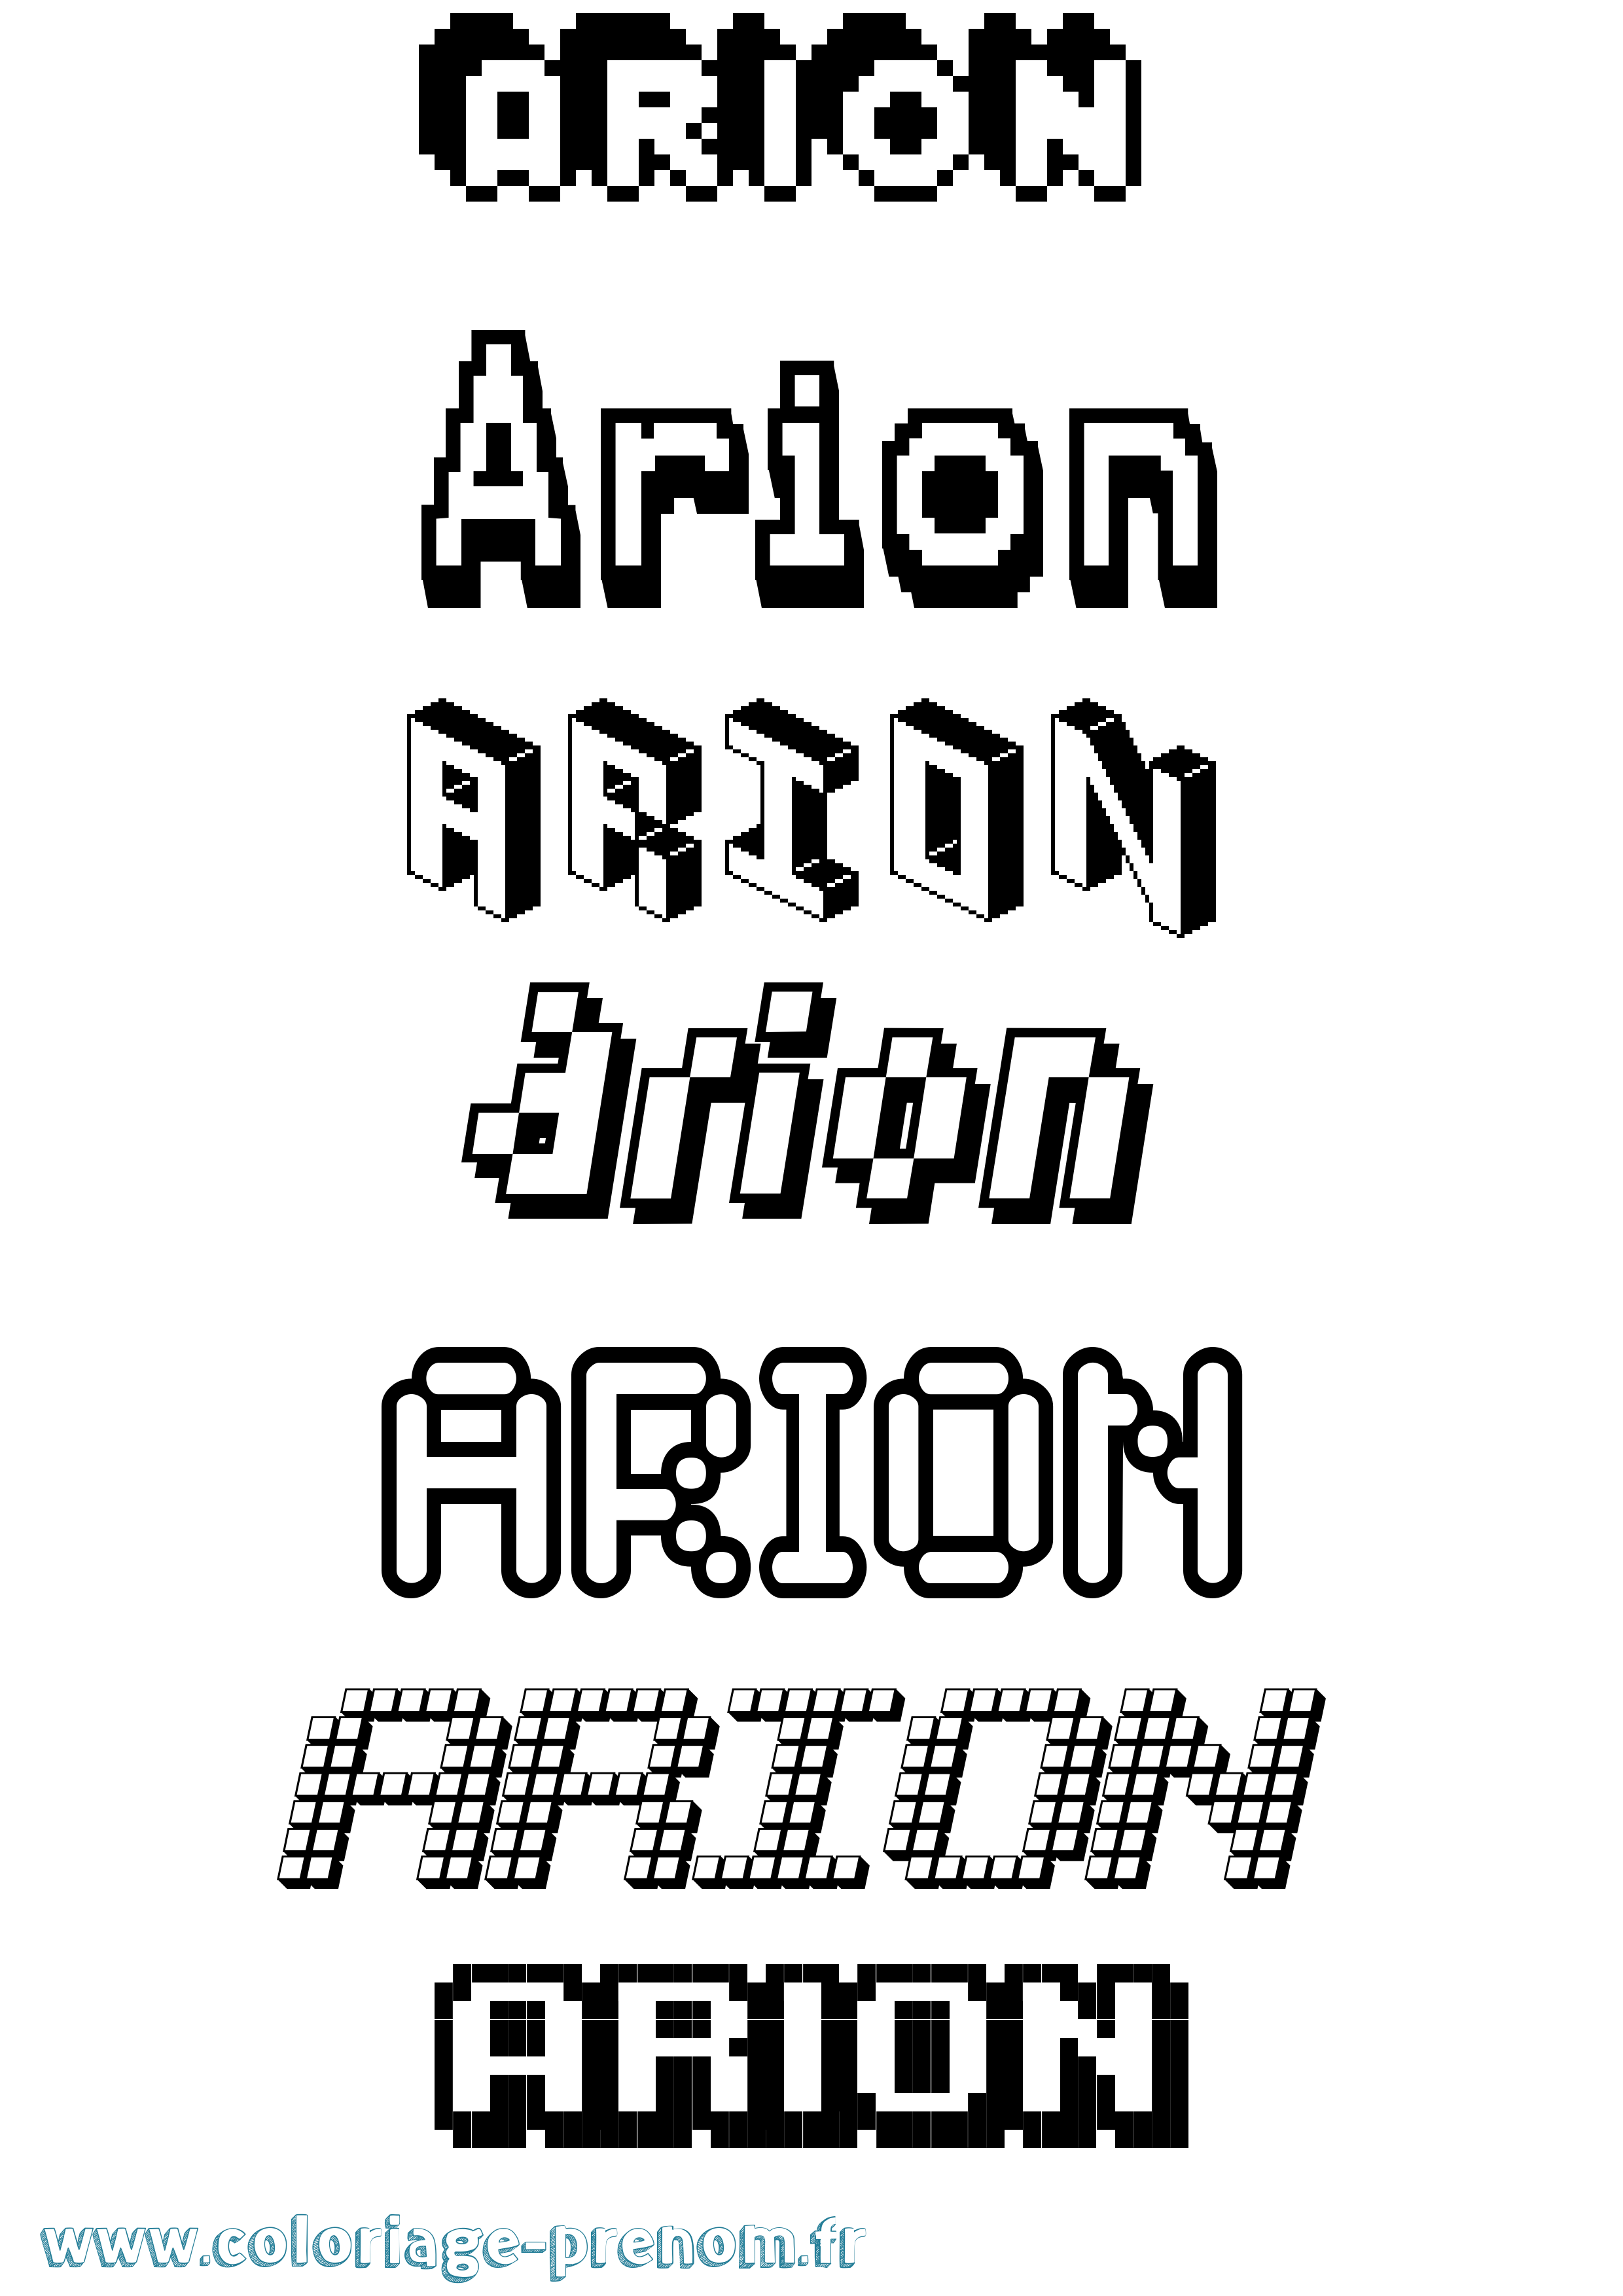 Coloriage prénom Arion Pixel